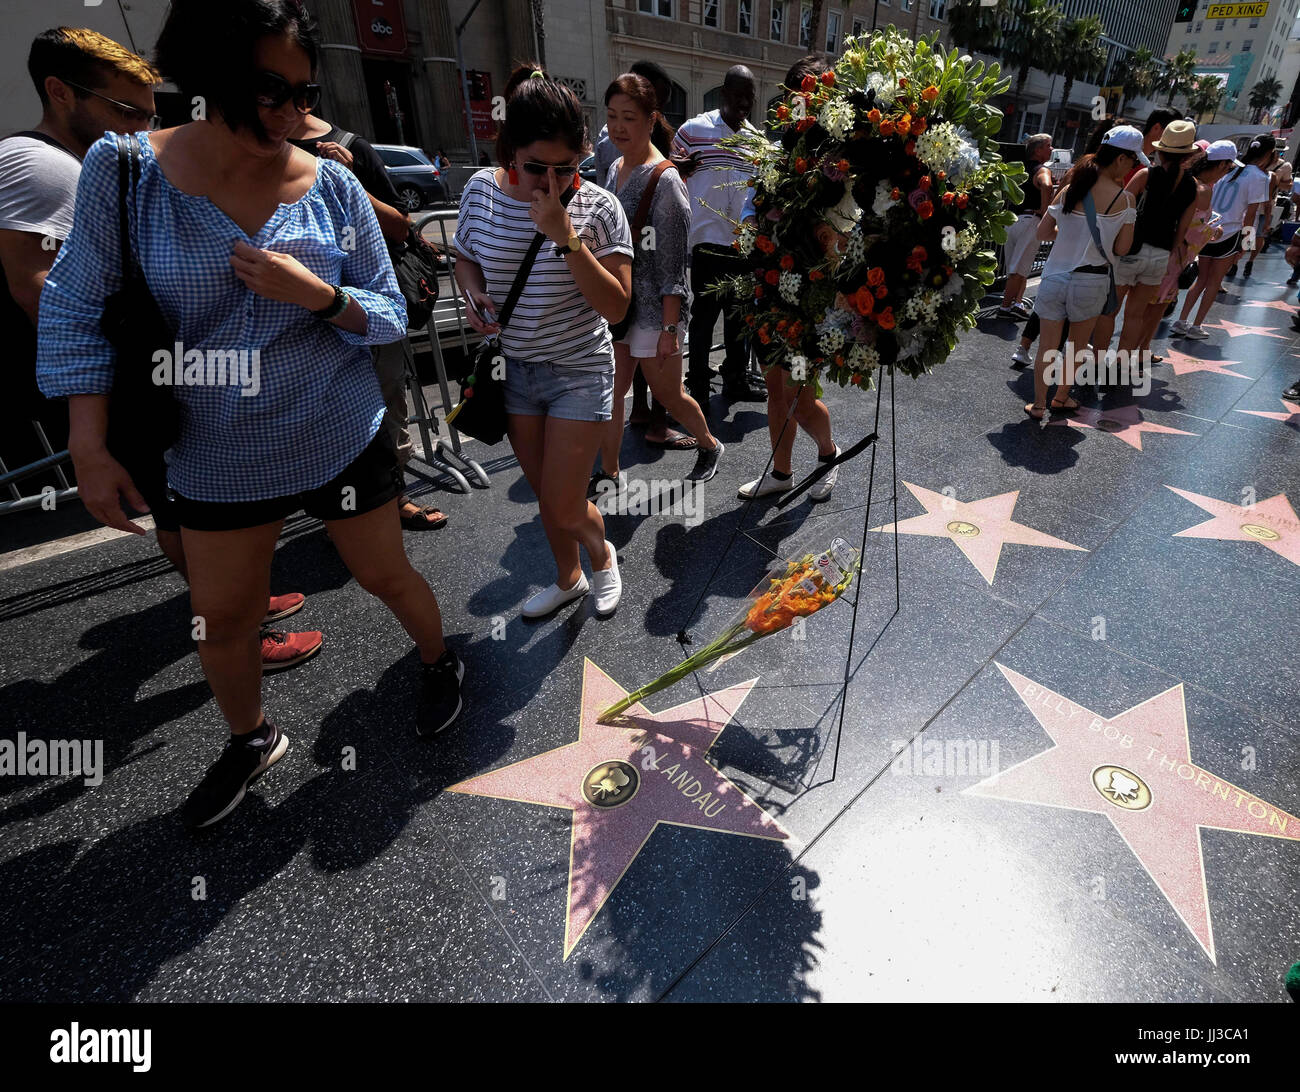 Los Angeles, USA, samedi. 15 juillet, 2017. Fleurs dans la mémoire de l'acteur Martin Landau sont placés sur son étoile sur le Hollywood Walk of Fame en face de la piste Dolby Theatre, à Los Angeles, États-Unis, le 17 juillet 2017. Landau, l'acteur qui a gagné la célébrité dans les années 1960 TV show "Mission : Impossible", a couronné une longue carrière avec un Oscar pour son rôle de star du film d'horreur de vieillissement Bela Lugosi dans 1994's 'Ed Wood', est mort samedi, 15 juillet, 2017. Il était de 89. Credit : Zhao Hanrong/Xinhua/Alamy Live News Banque D'Images